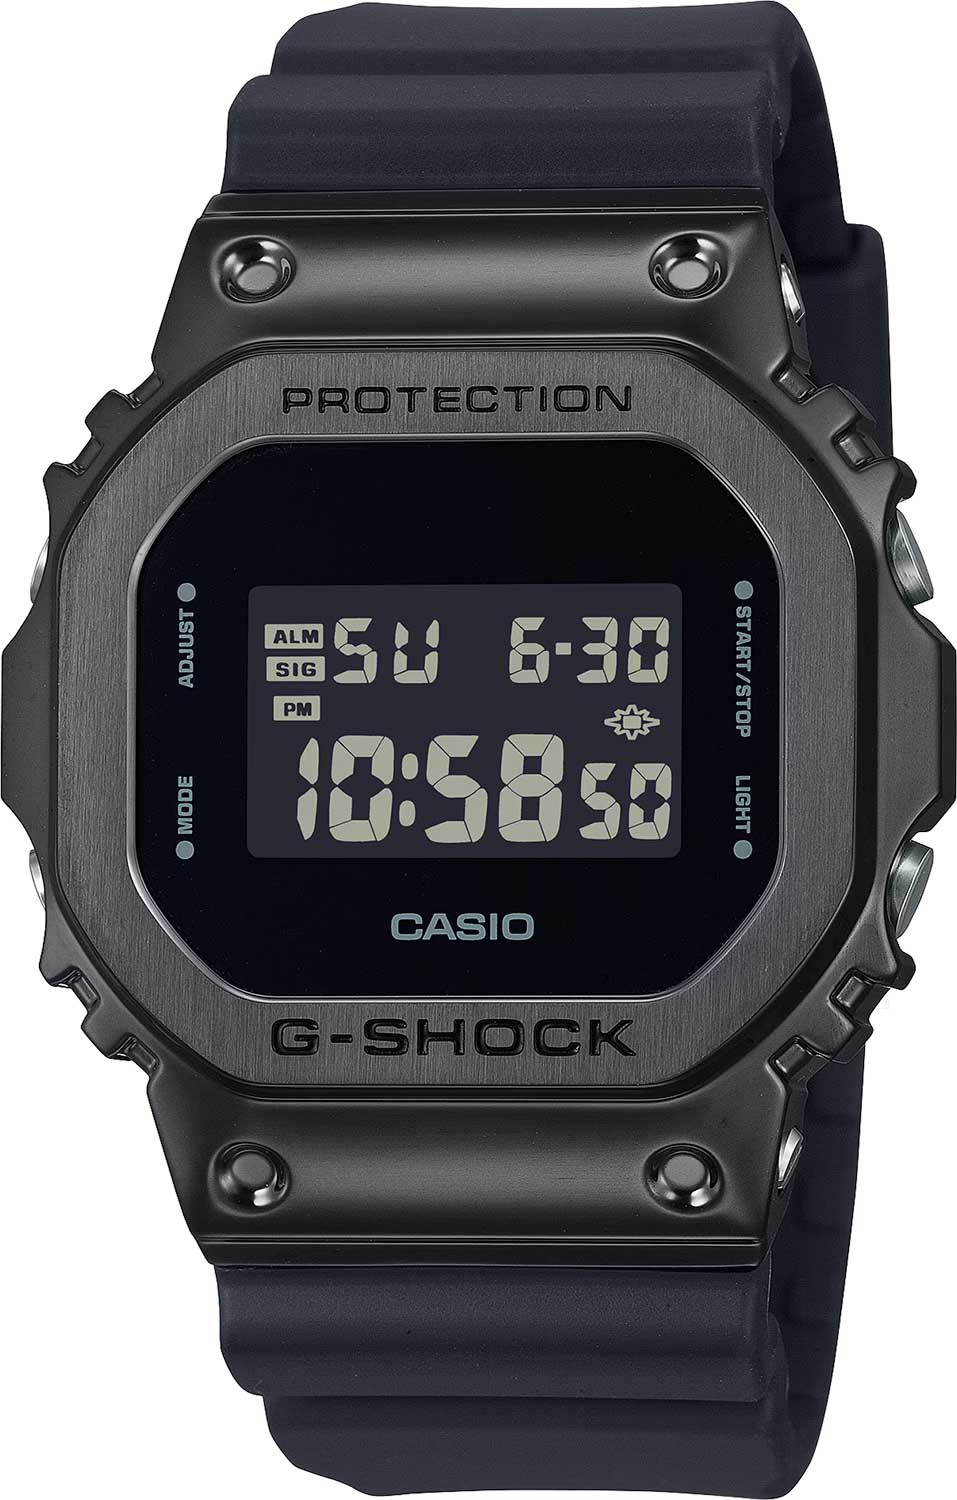    Casio G-SHOCK GM-5600UB-1  